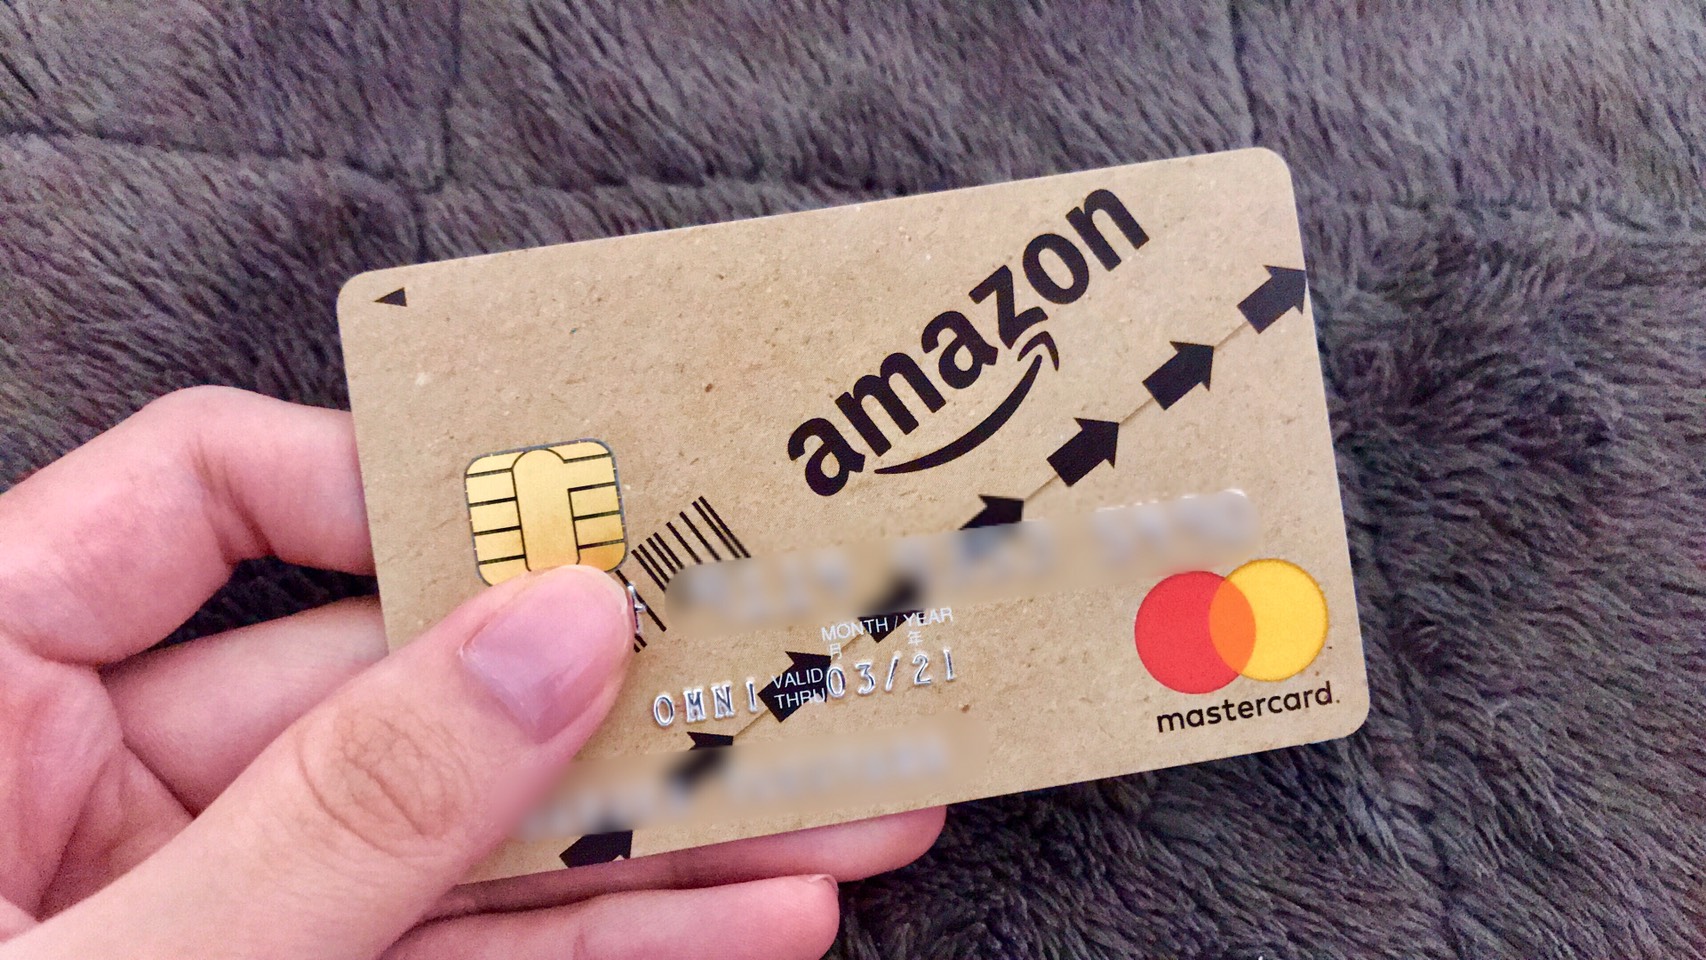 Amazonユーザーの為のクレジットカード「Amazon Mastercardクラシック」を徹底解説!ゴールドの方が